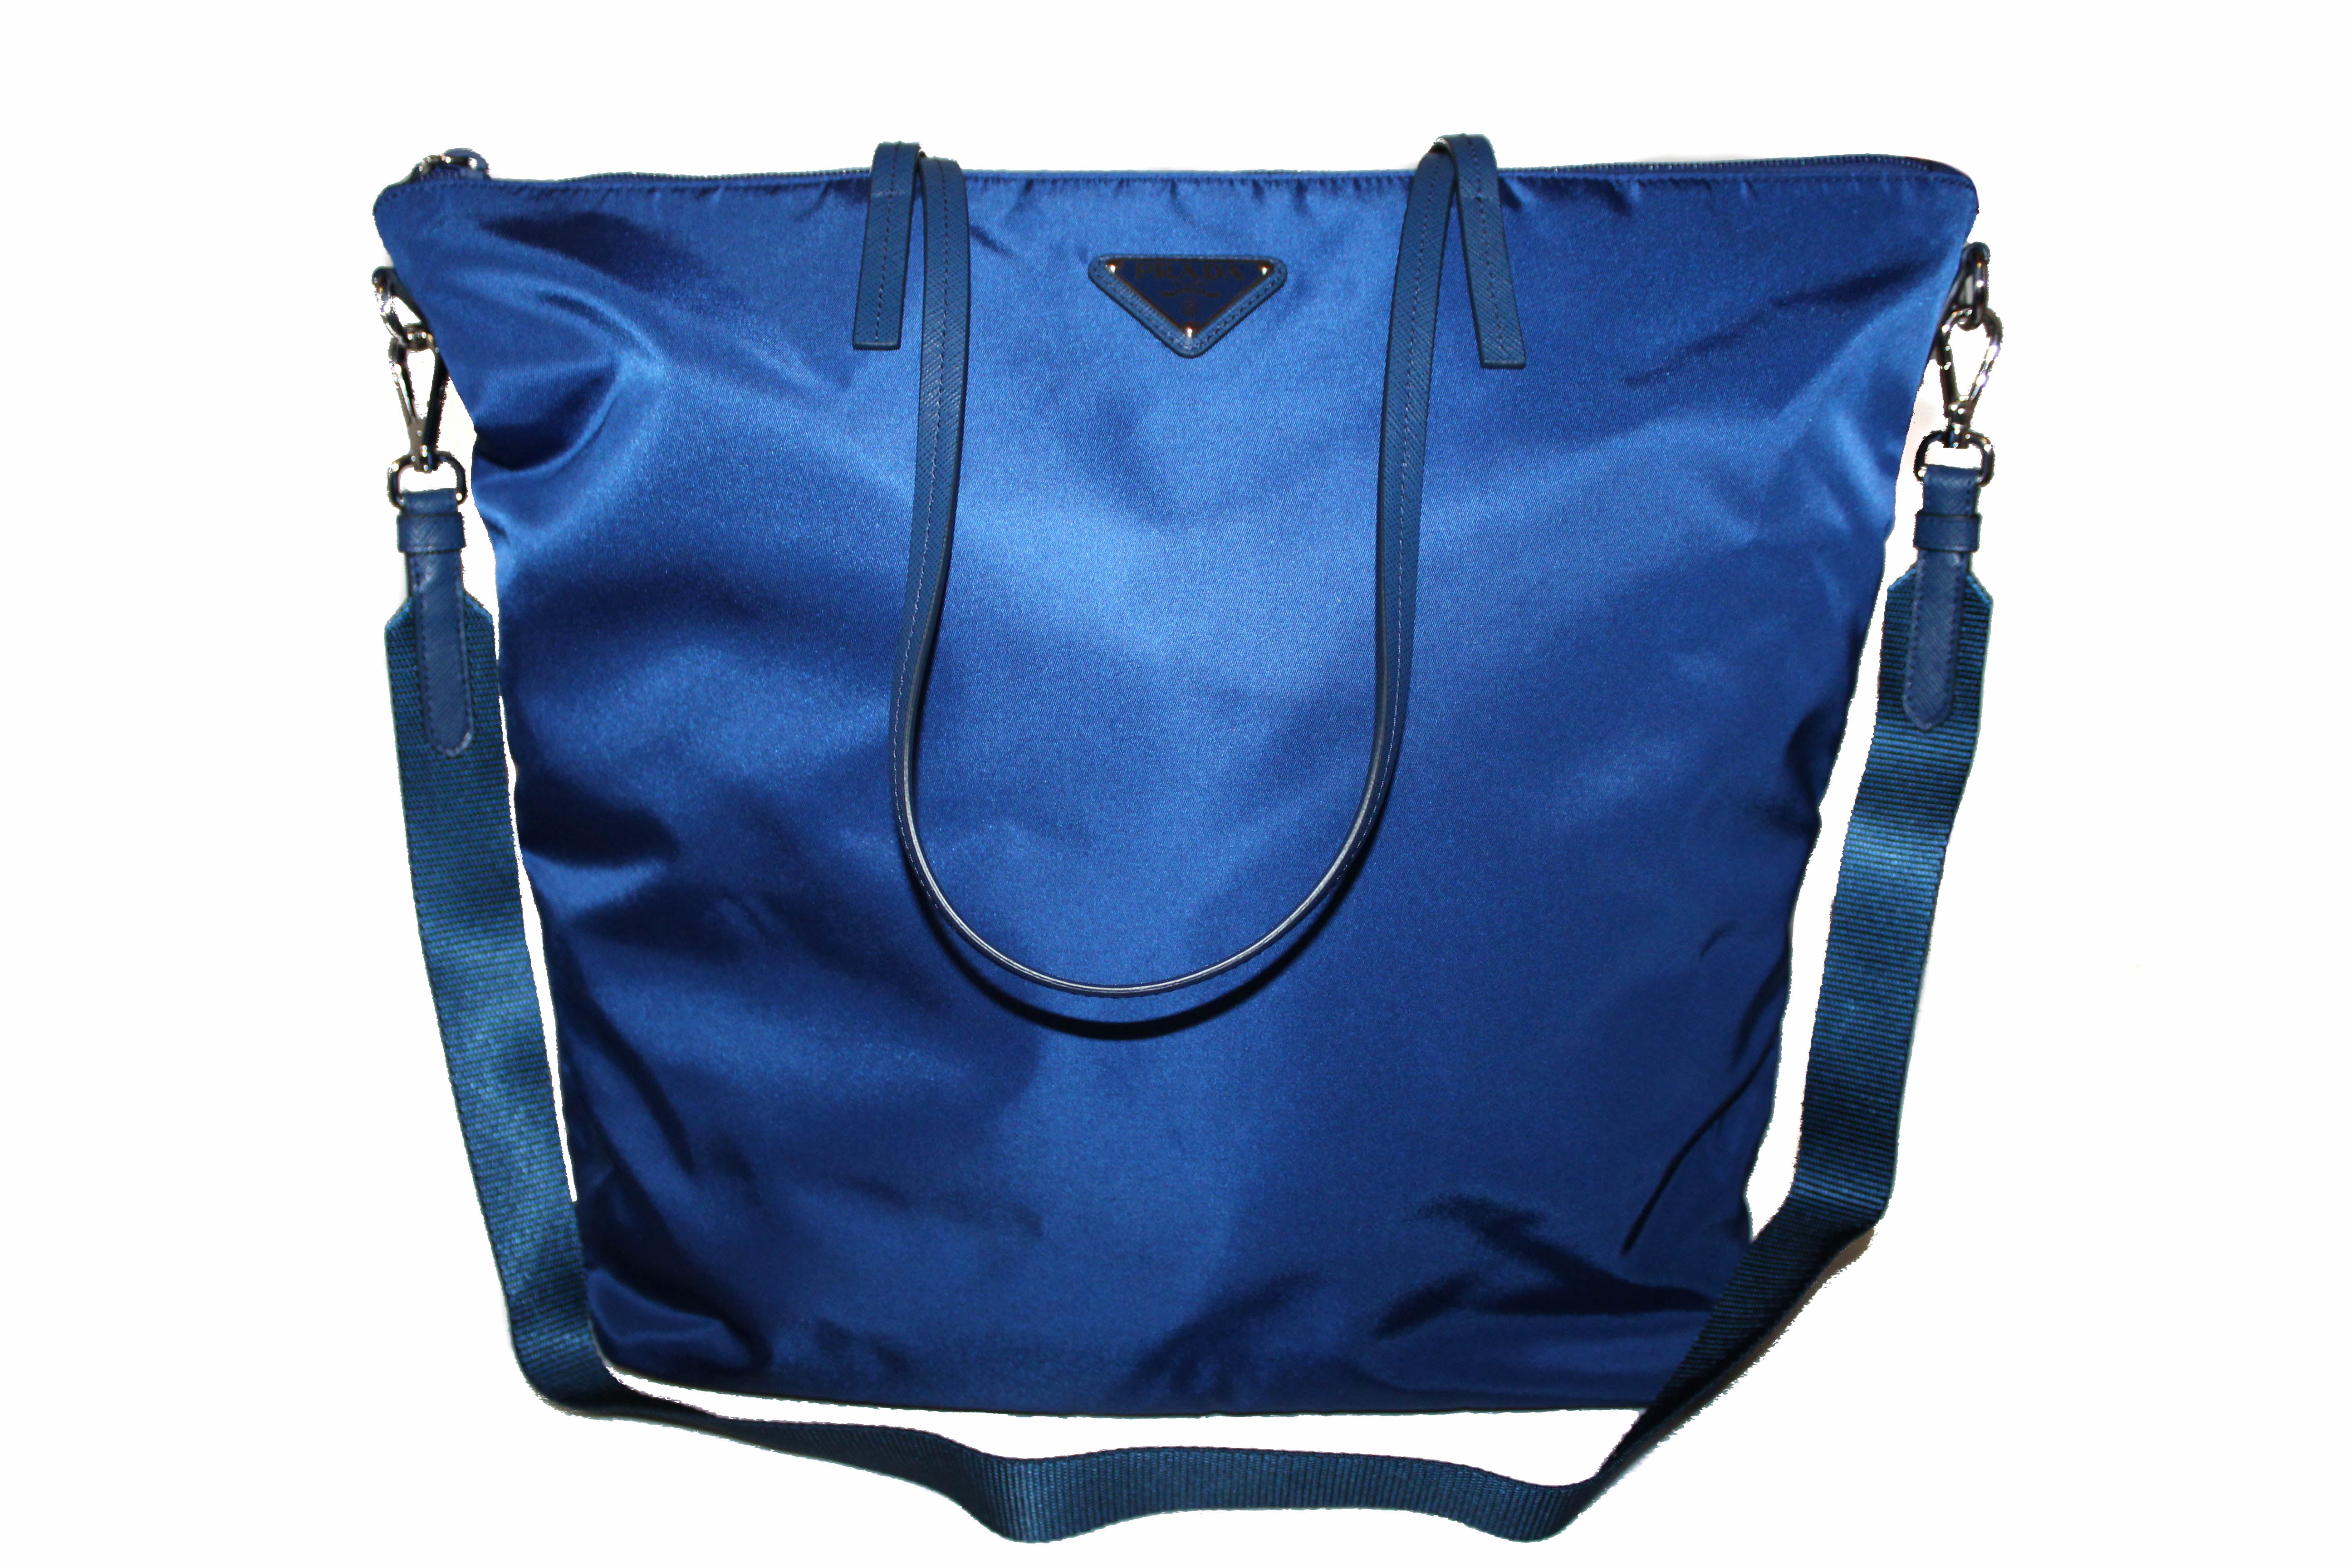 Prada Blue Plaid Nylon Tote Bag